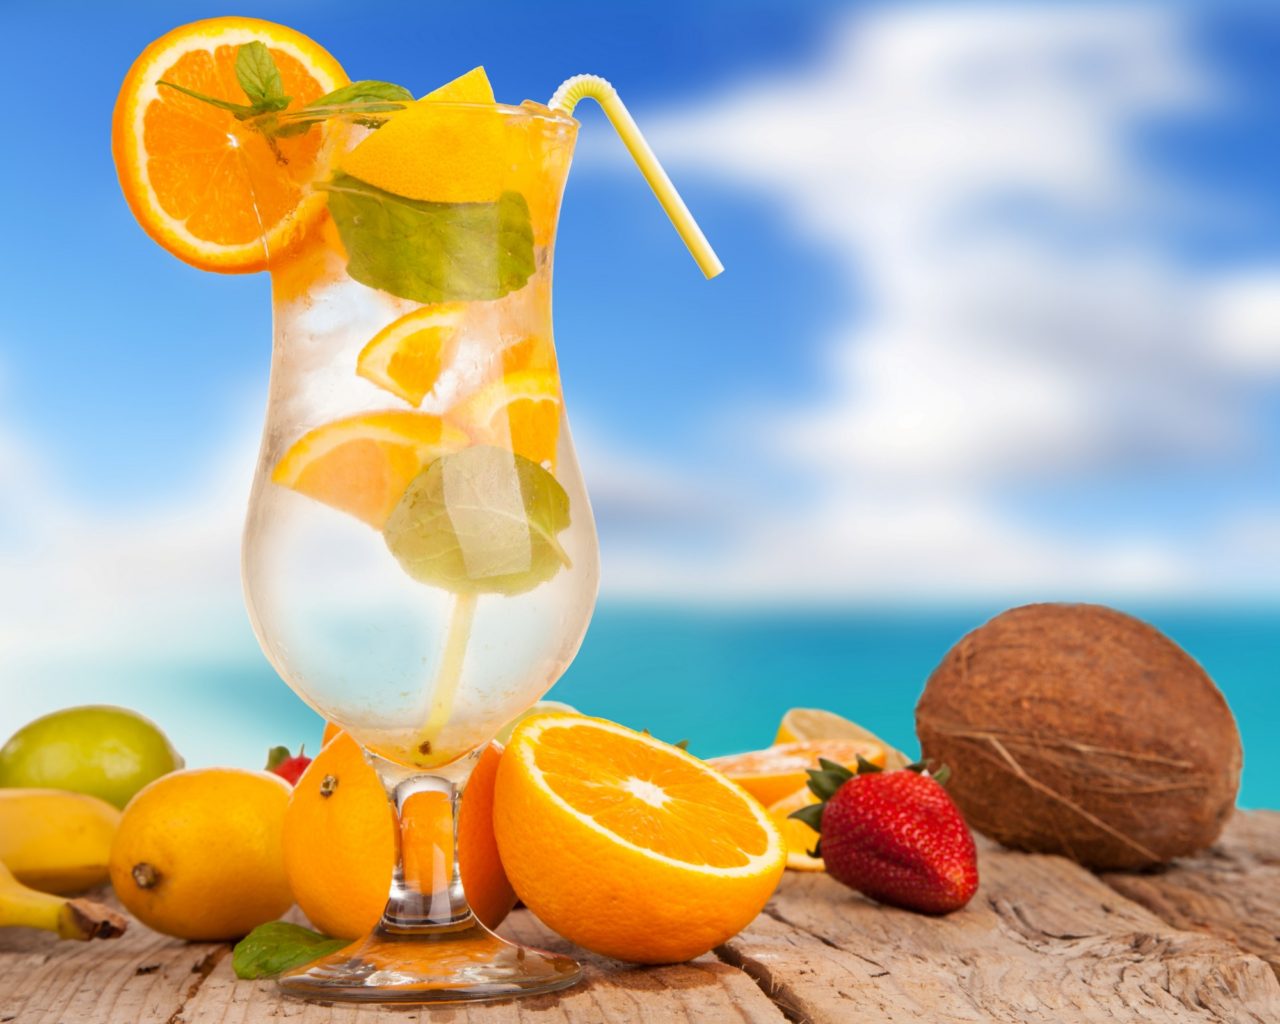 Summer refreshing drinks from fruit lemon orange banana coconut hd wallpaper